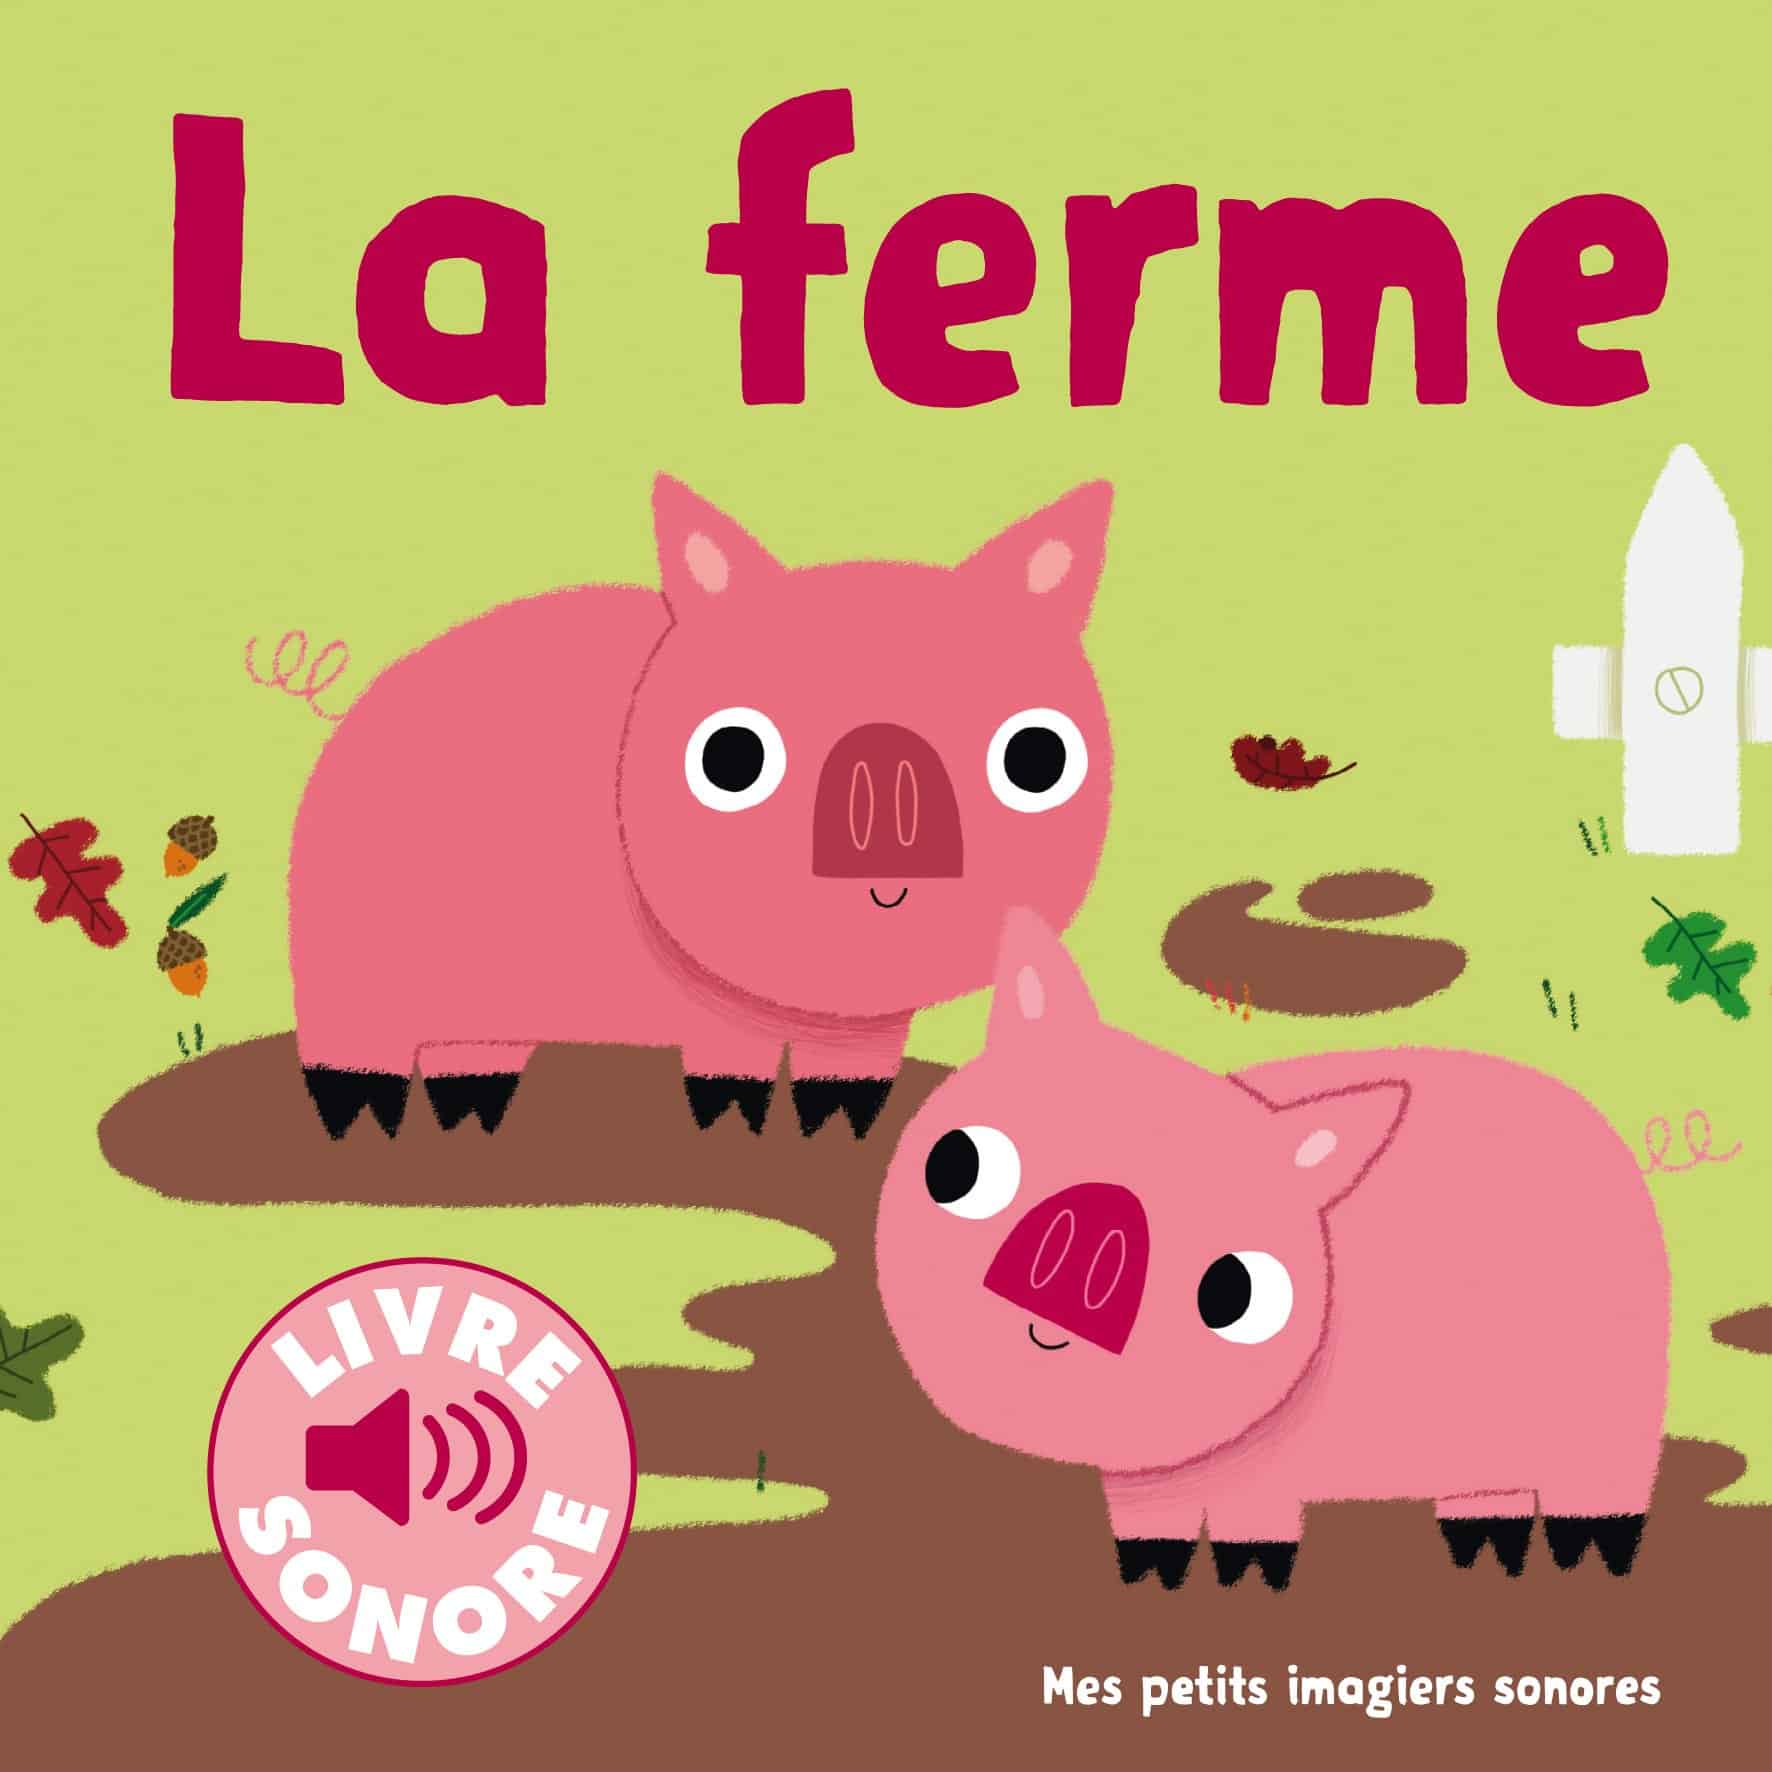 Quel livre offrir à un bébé de 1 an ? - Parisianavores - Blog Lifestyle /  Food / Voyage / Kids